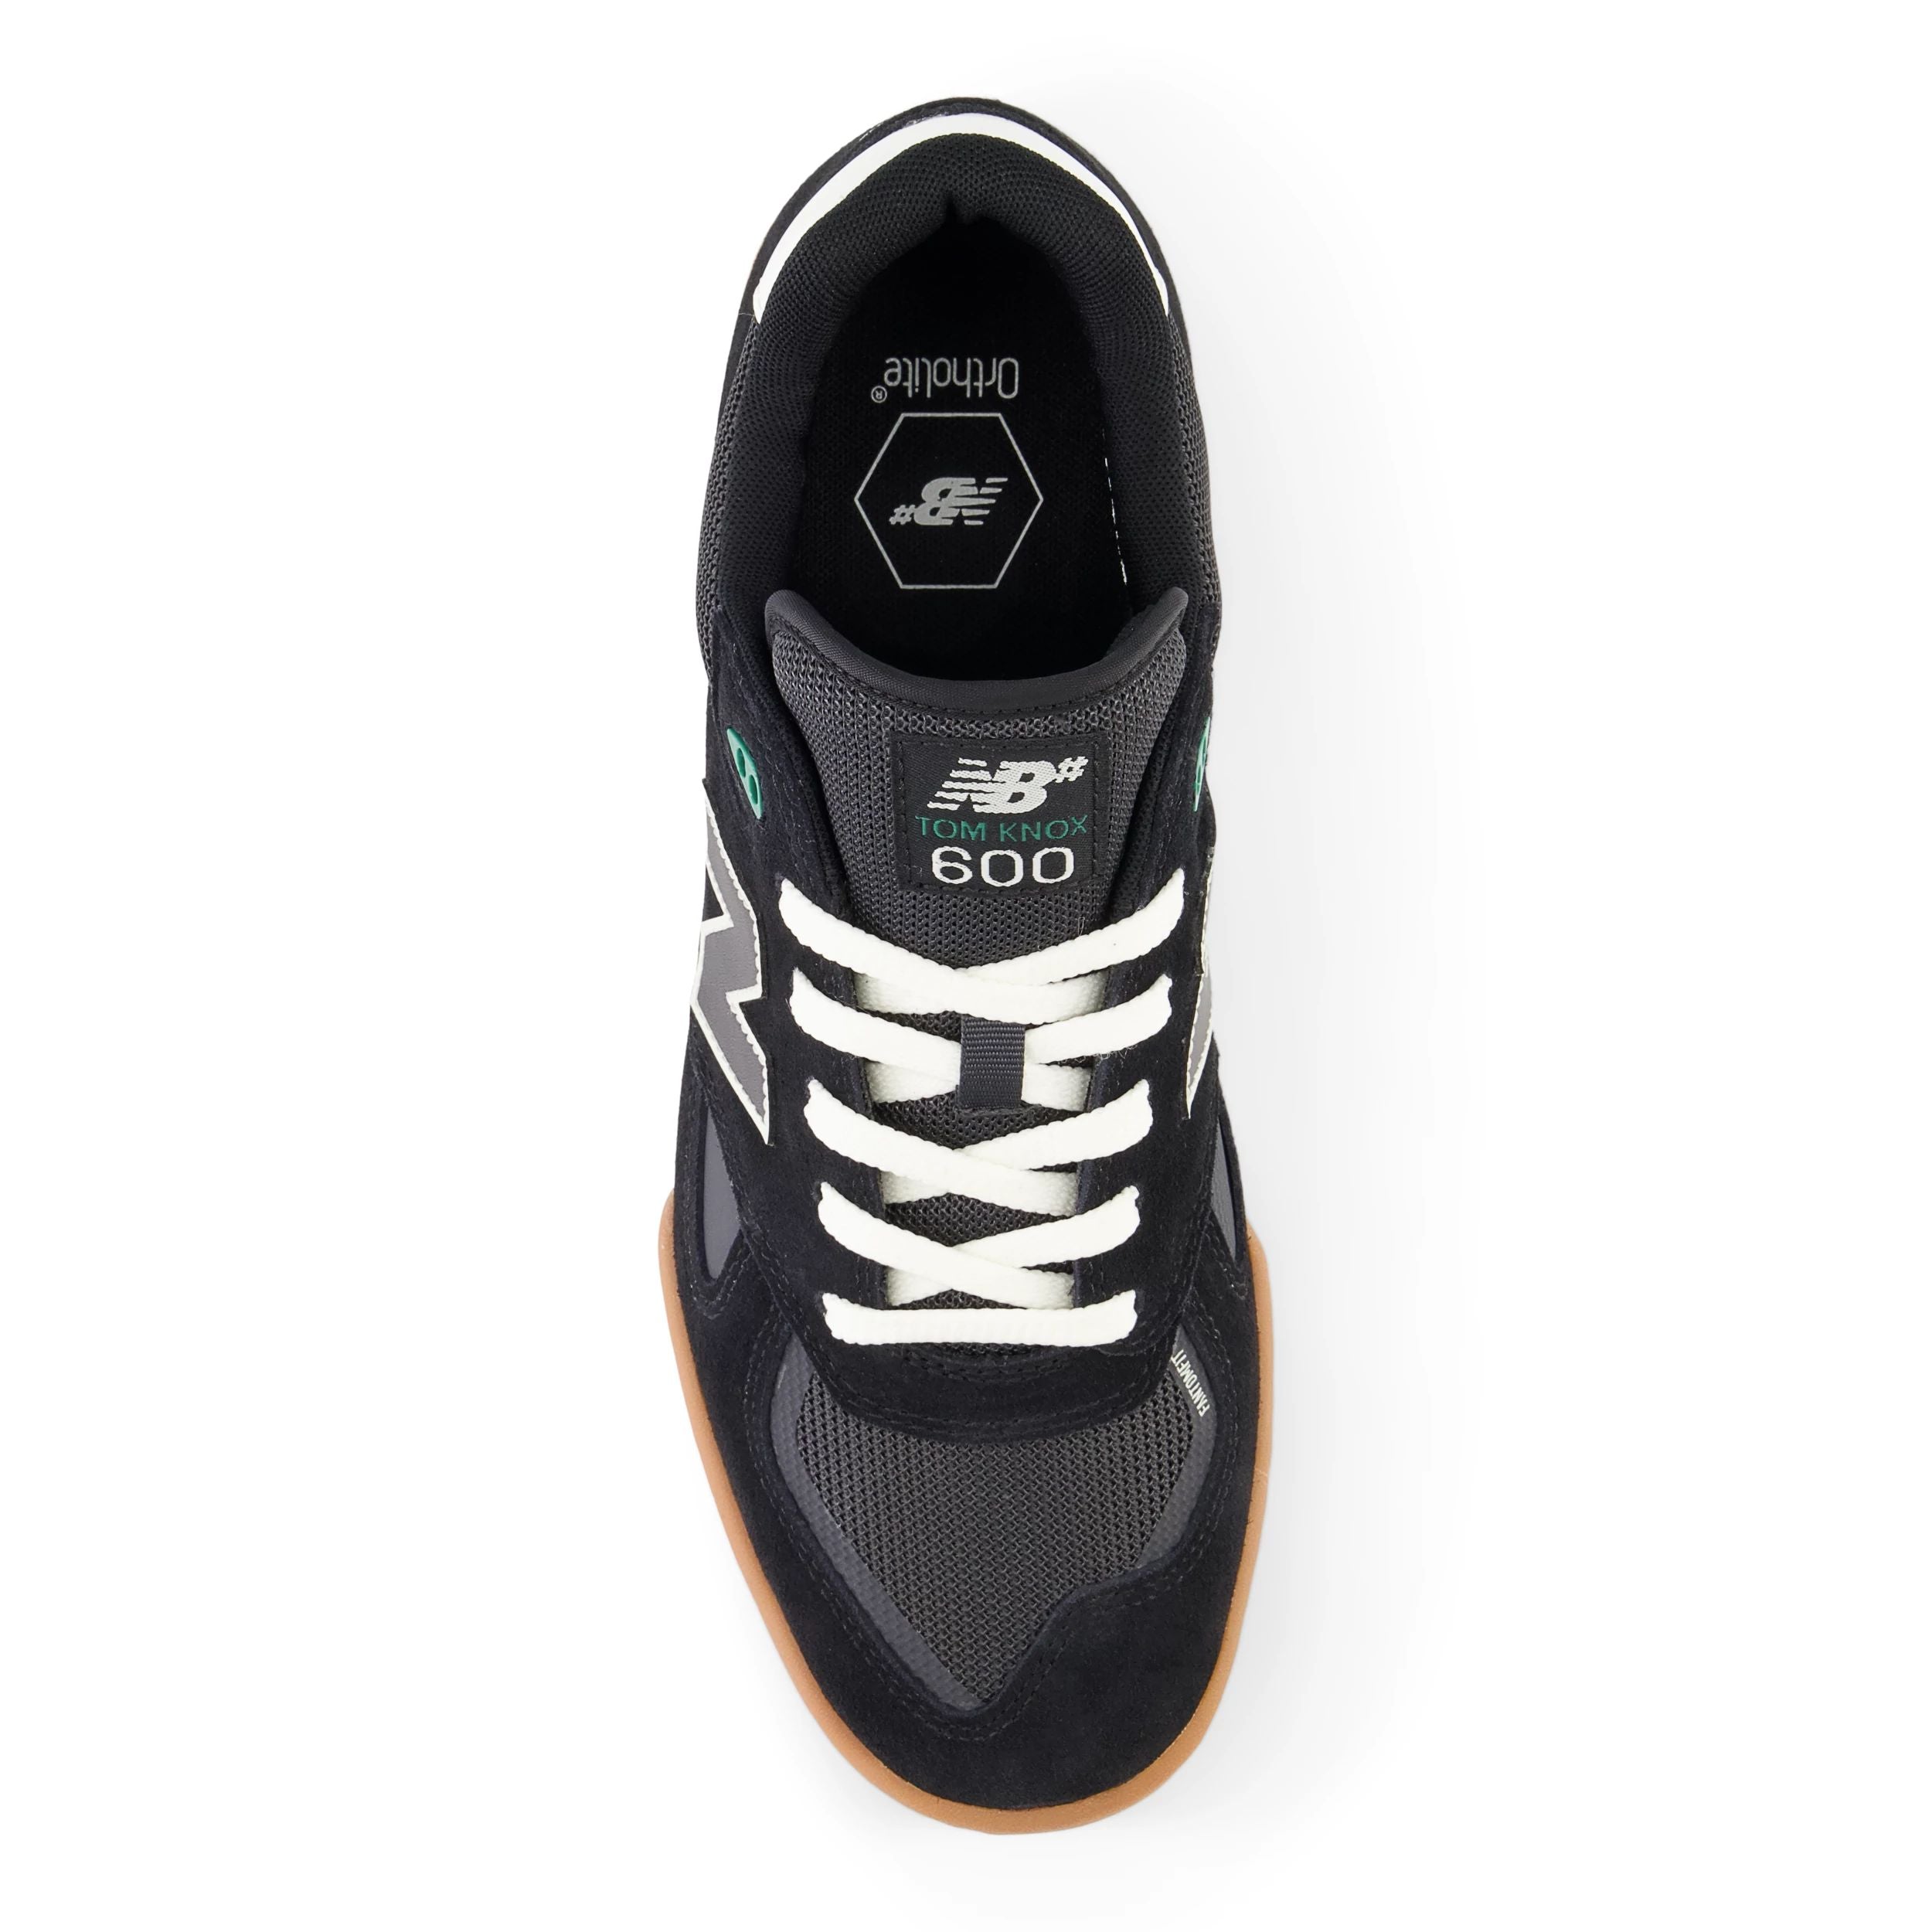 Black/Gum Tom Knox NM600 NB Numeric Skate Shoe Top